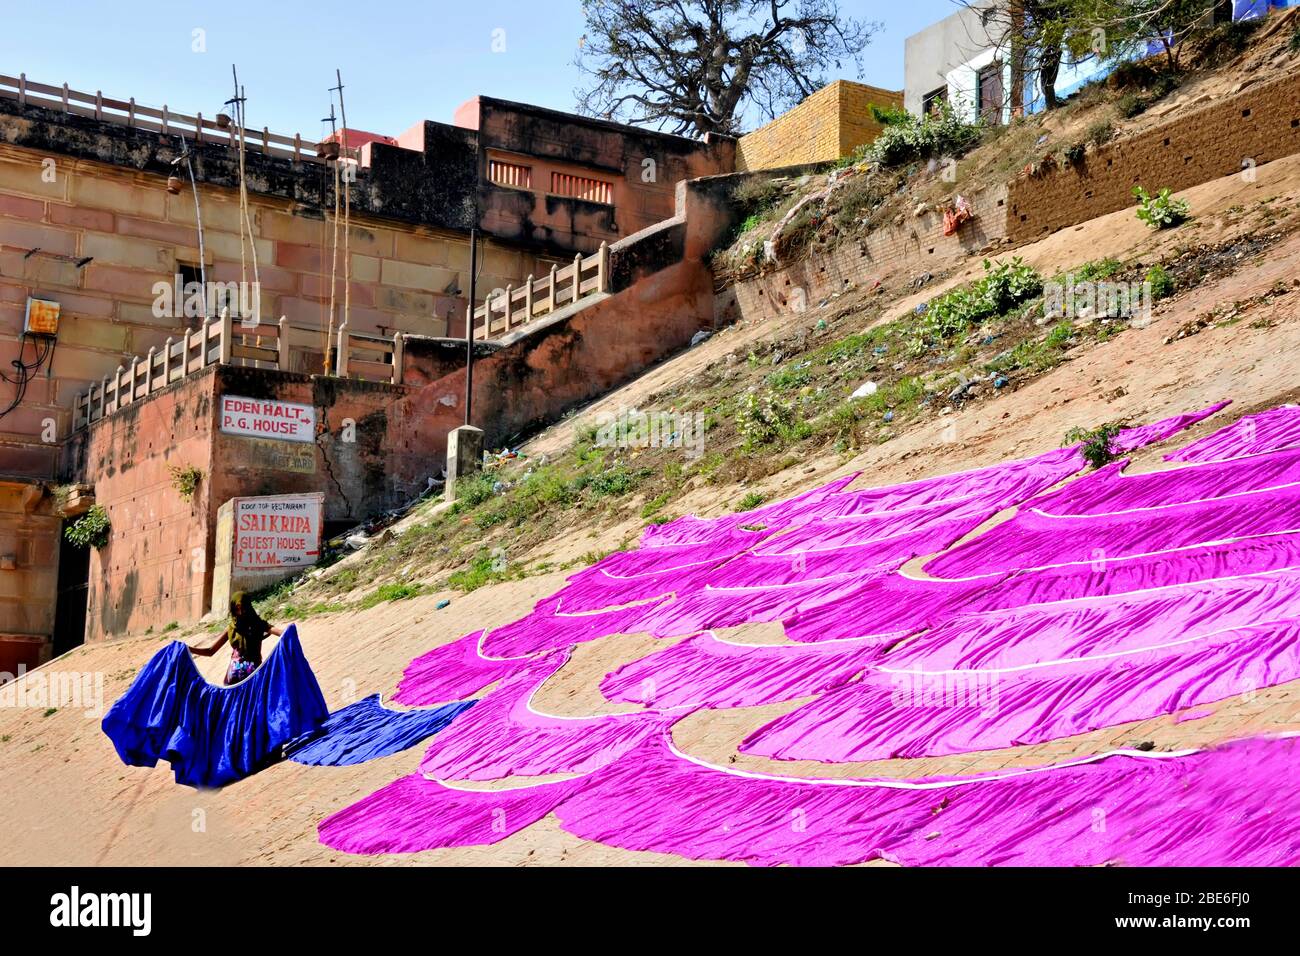 dhobi ghat at varanasi uttar pradesh india Stock Photo